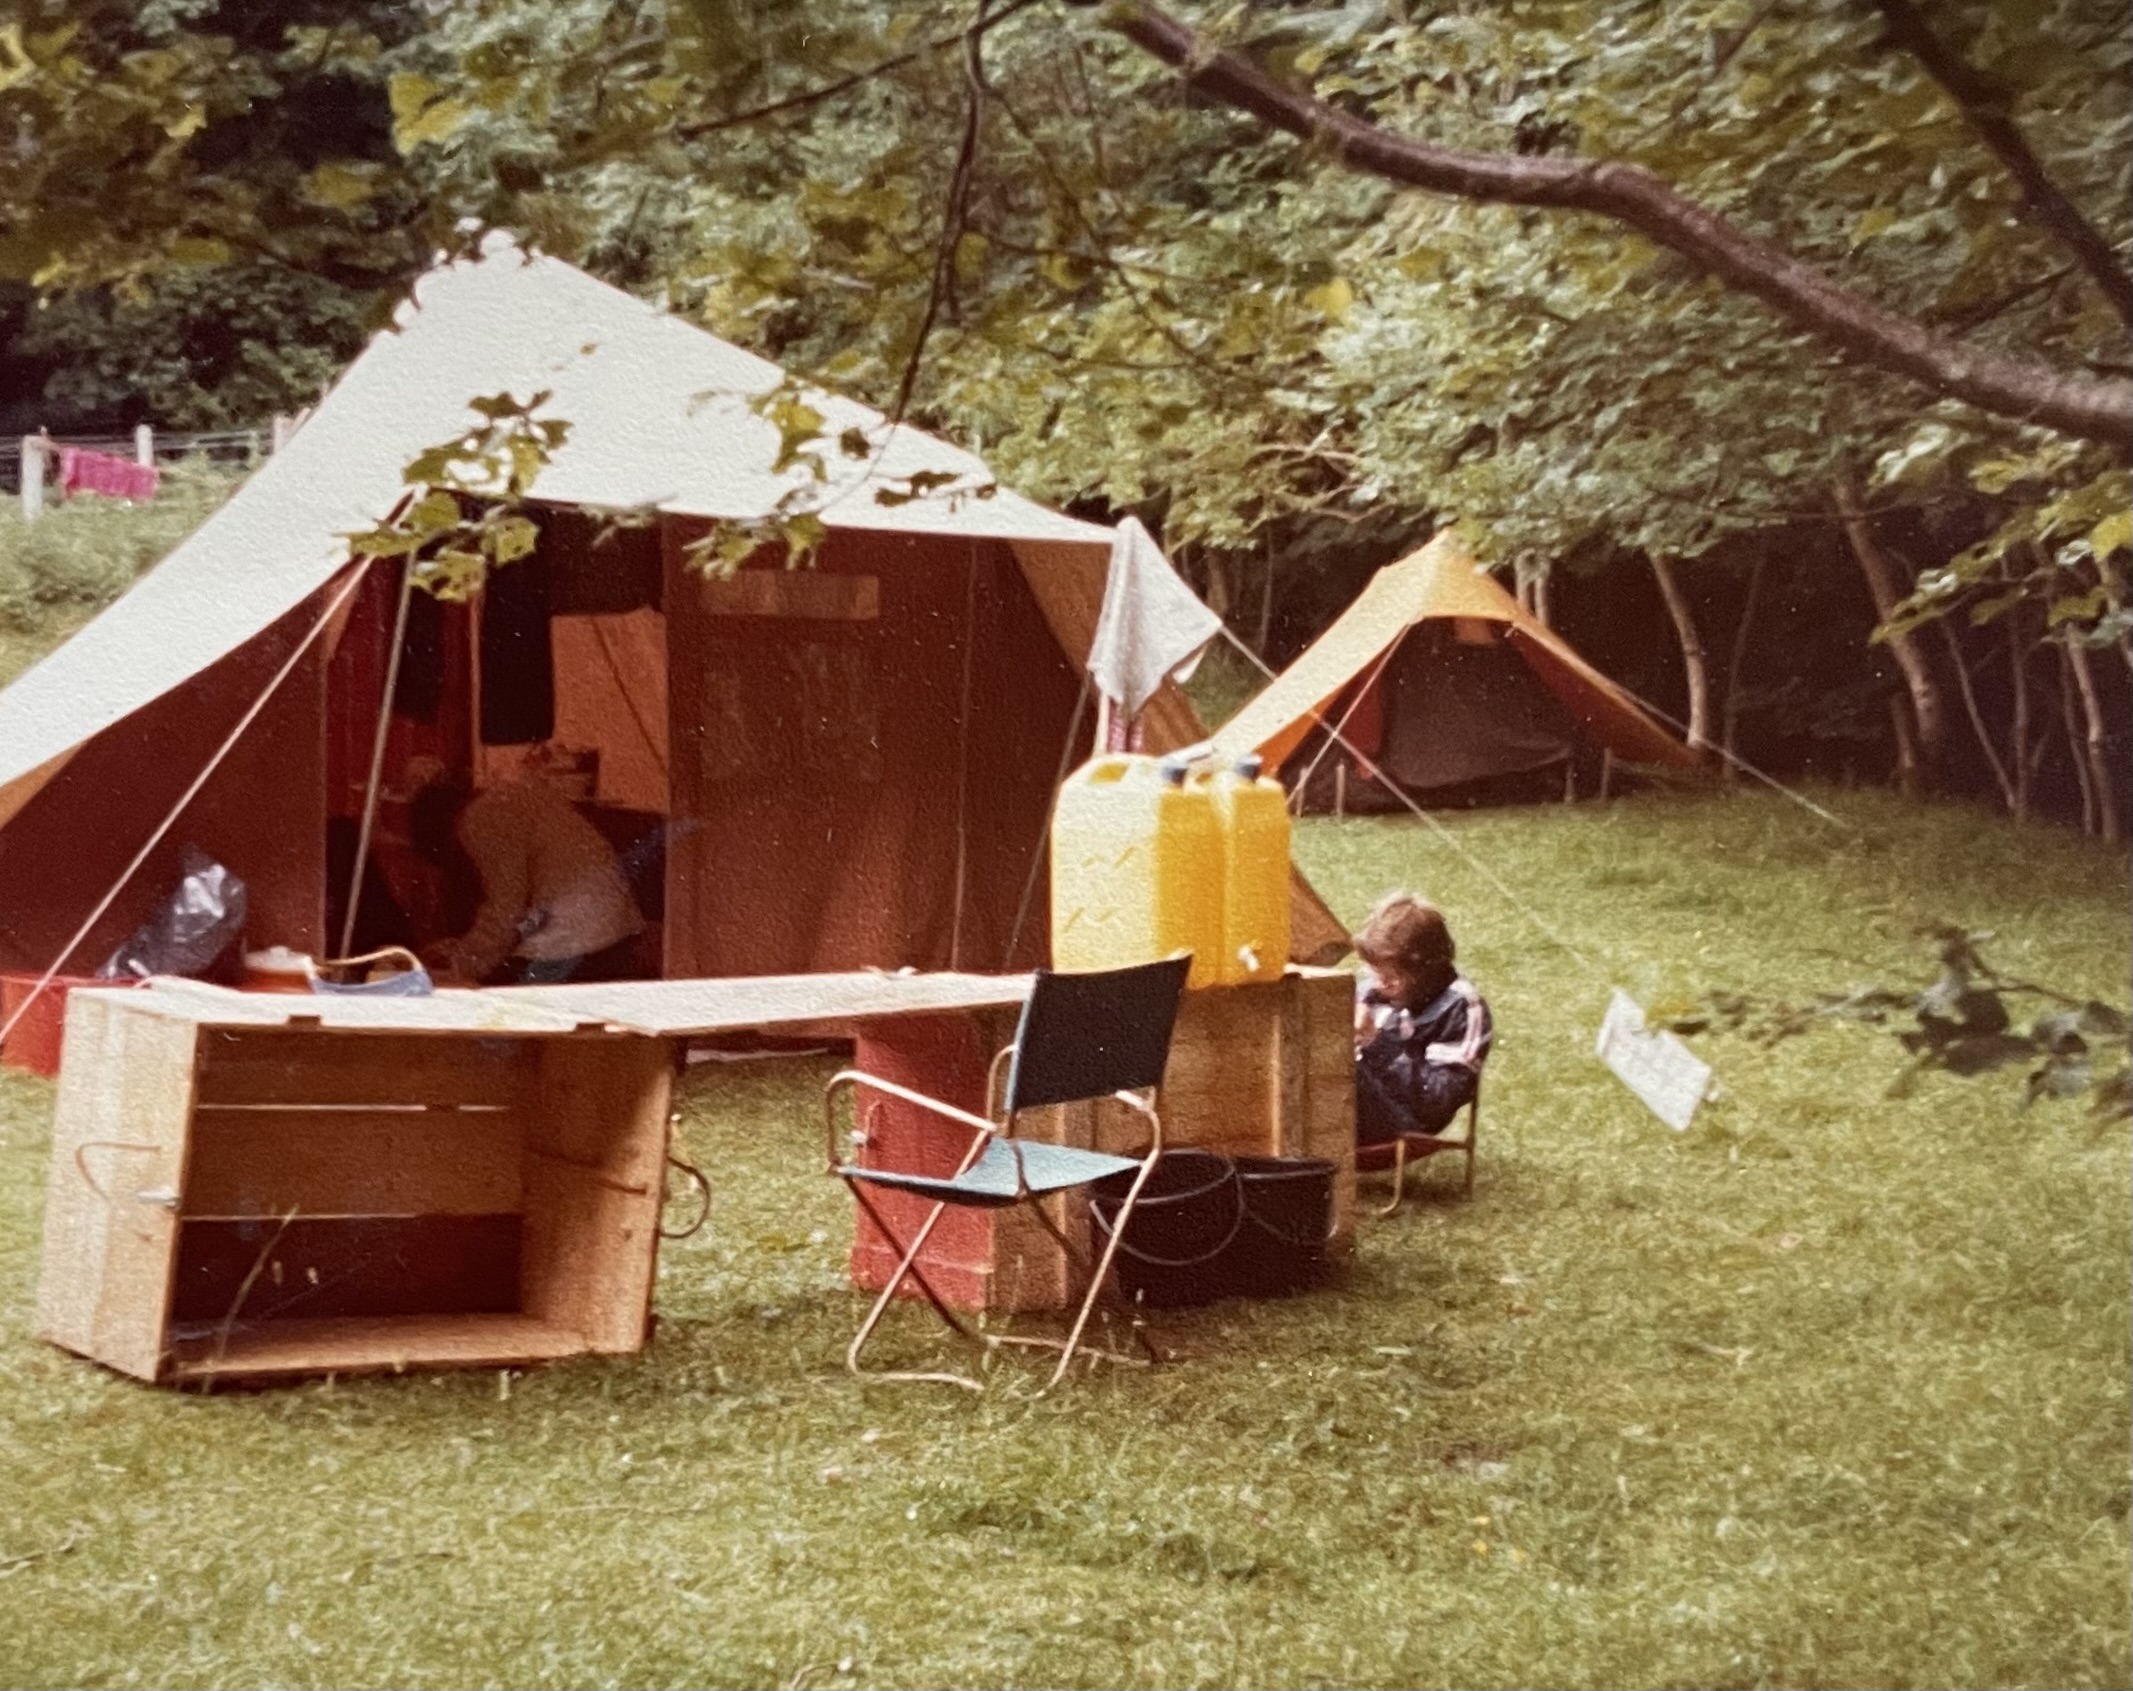 Kampeerkist in gebruik / Camping chest in use, Wales 1978